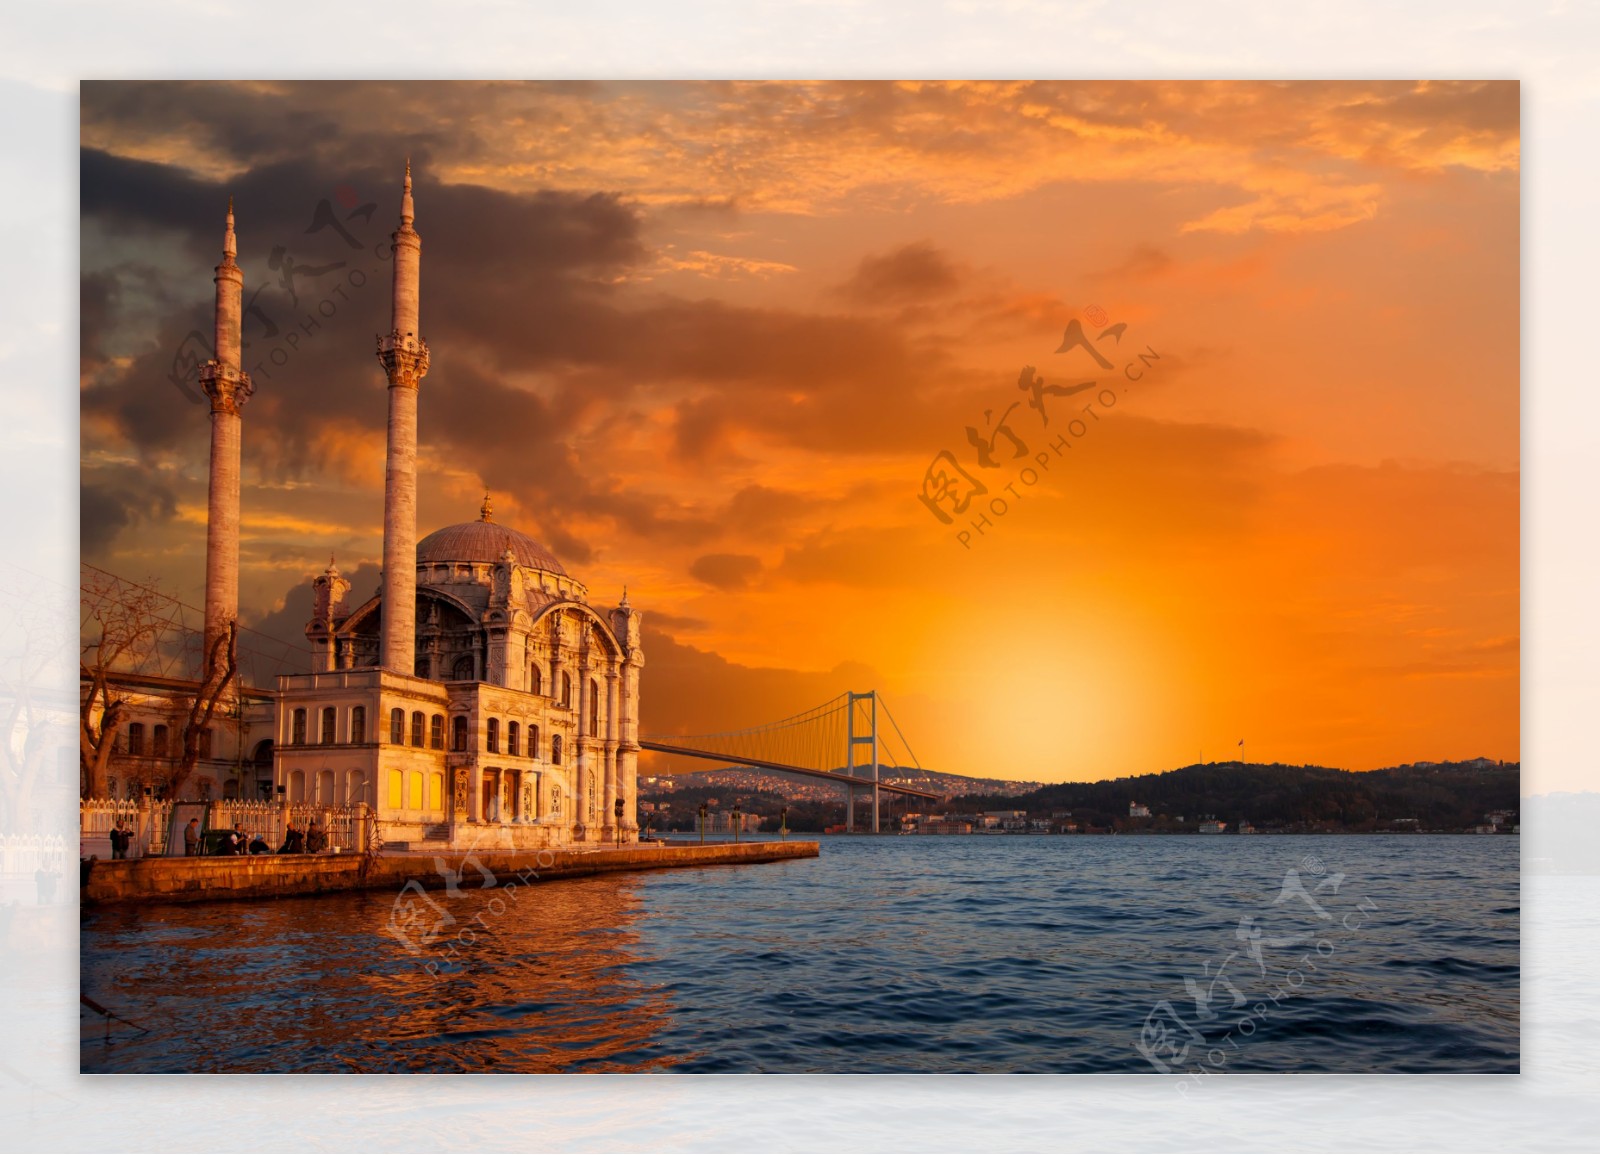 土耳其城市风光图片